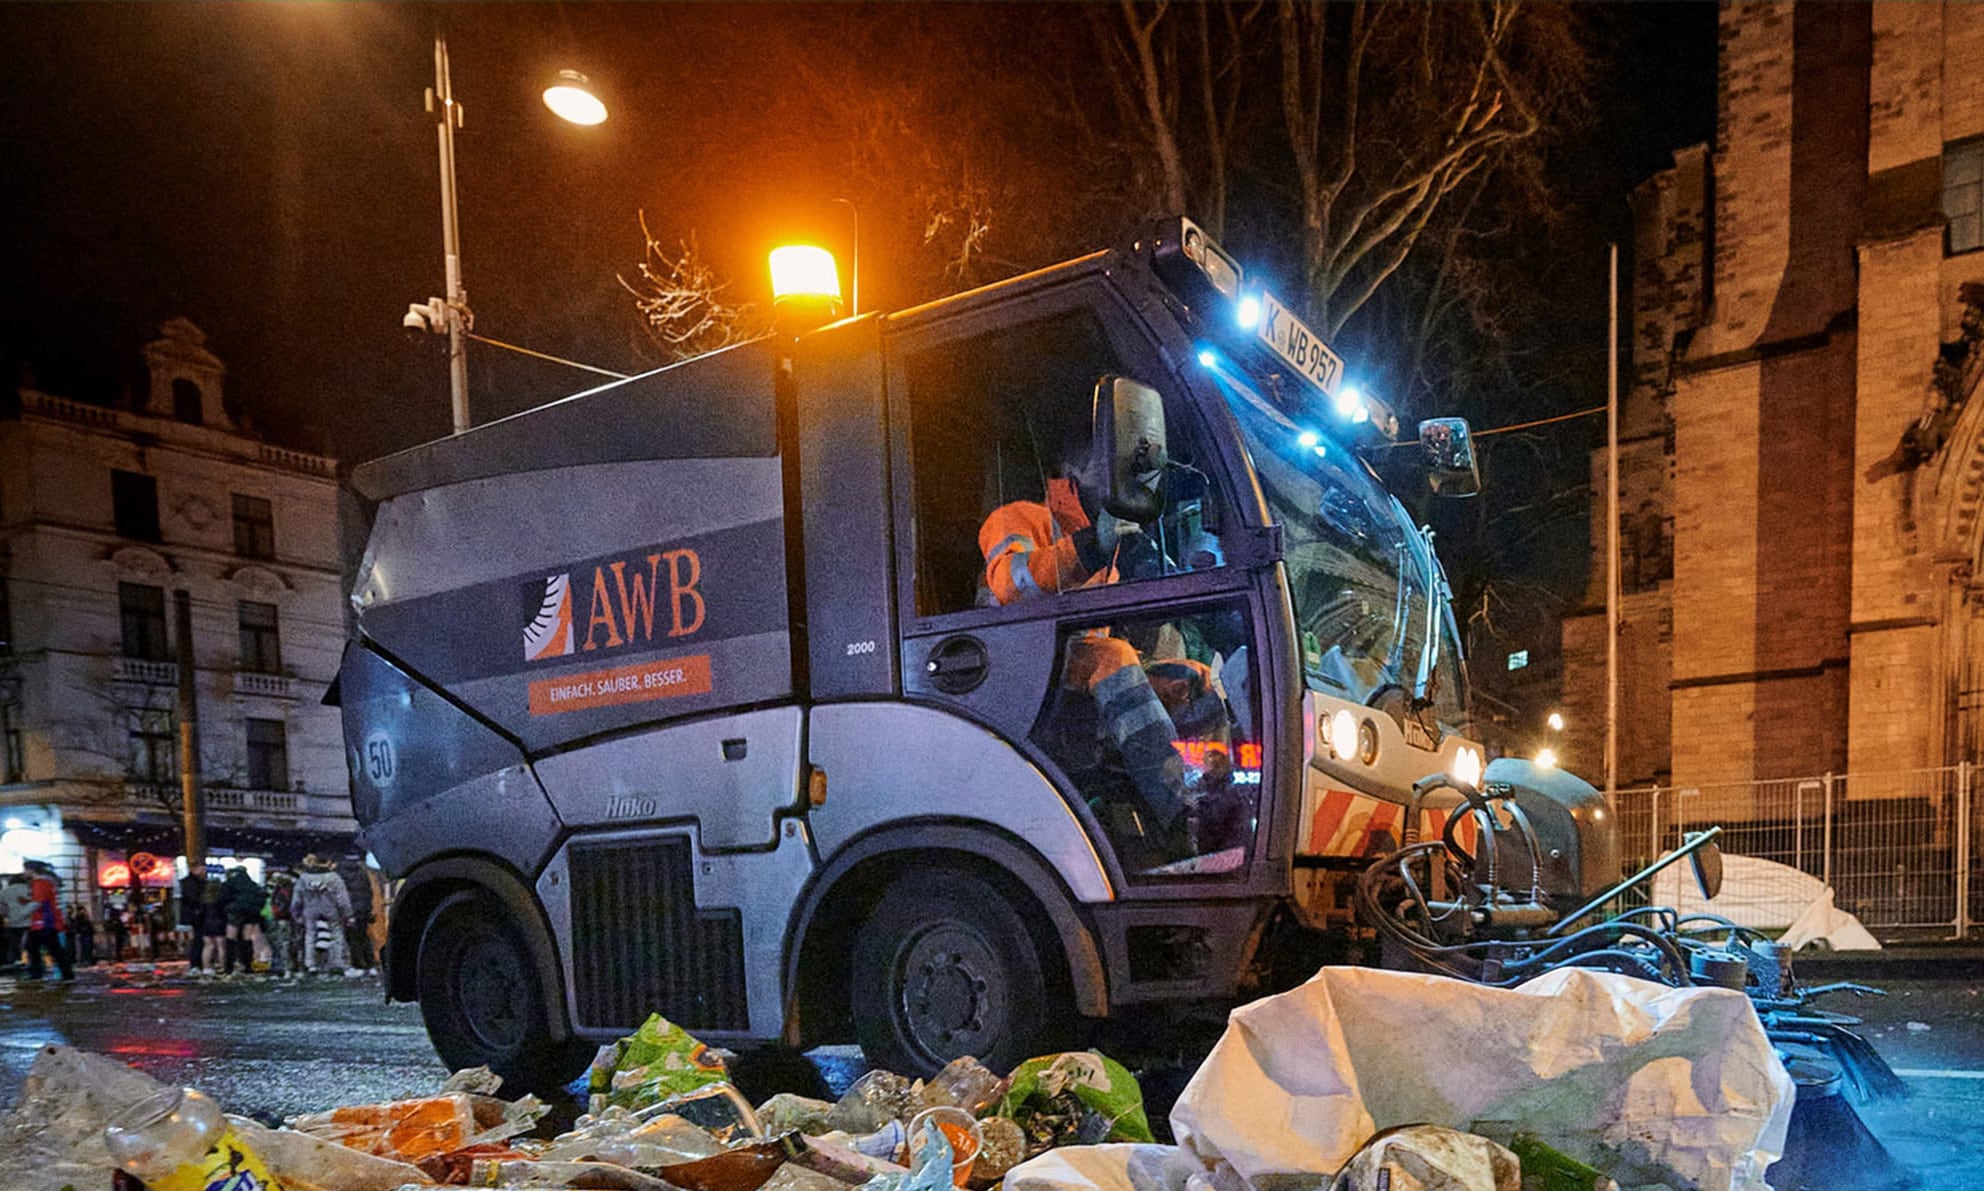 Reinigungsfahrzeug der AWB bei Nacht